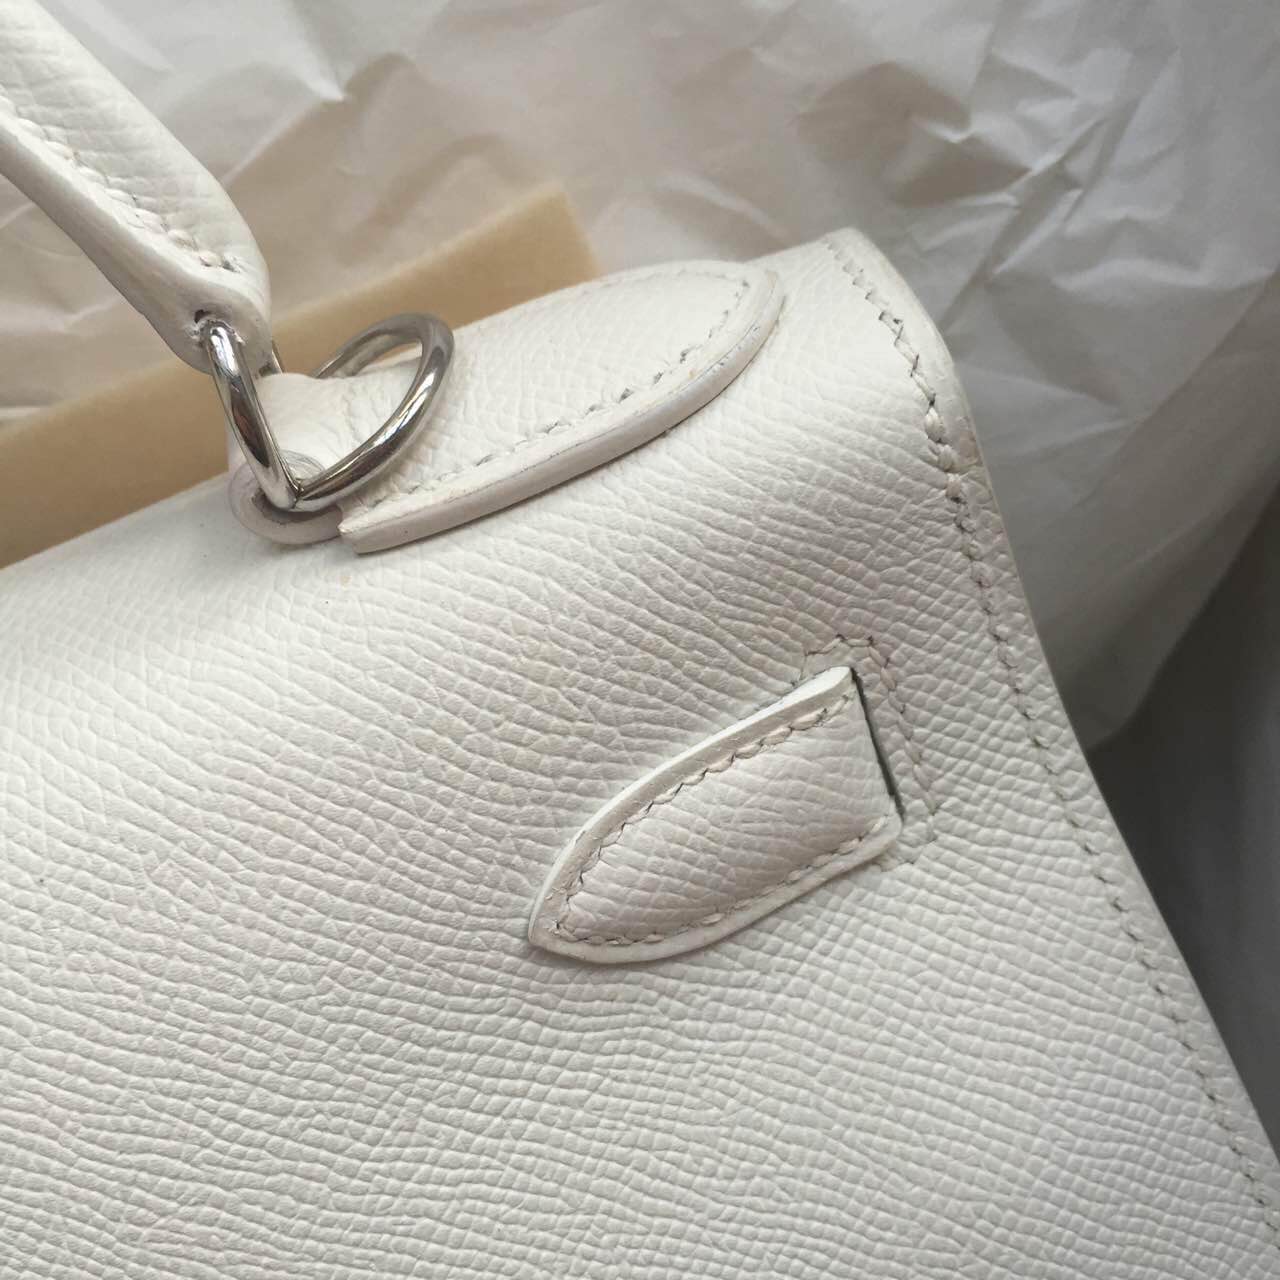 28cm White Epsom Calfskin Leather Hermes Kelly Bag Sellier White &#038; Gold Hardware